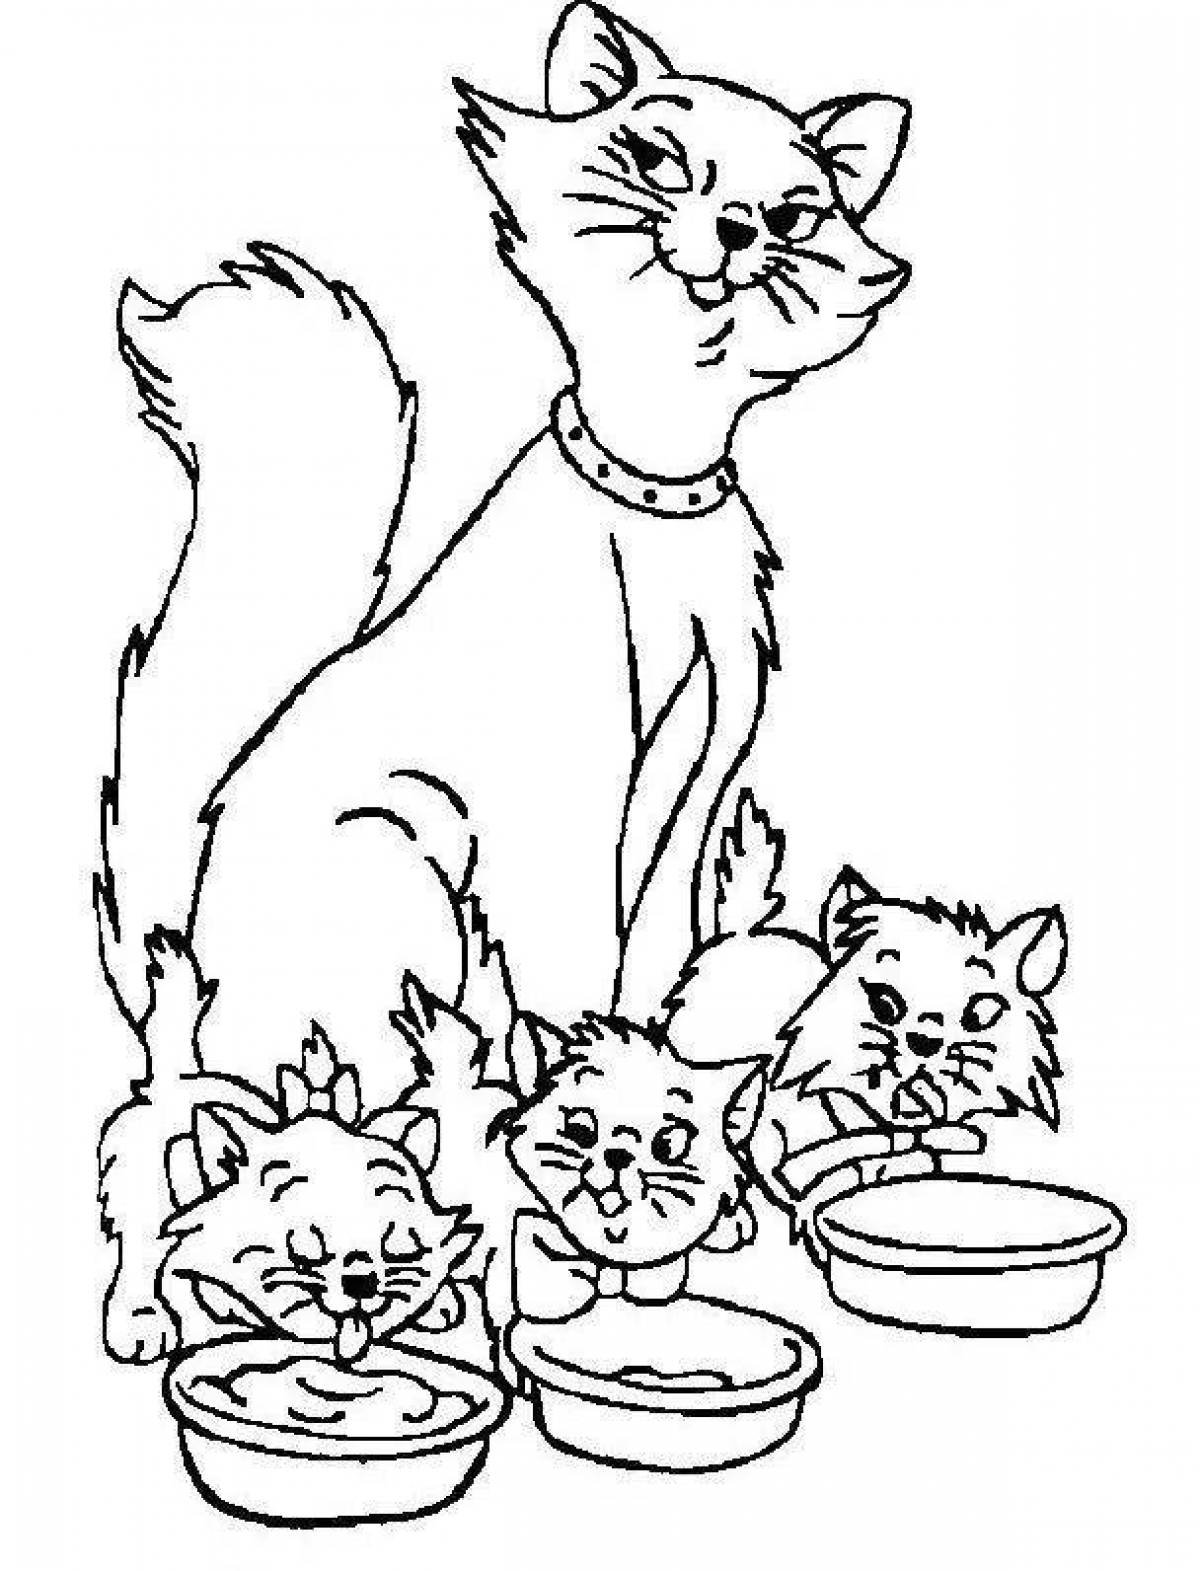 Раскраски из мультфильма Три кота. Раскраски Три кота скачать для детей